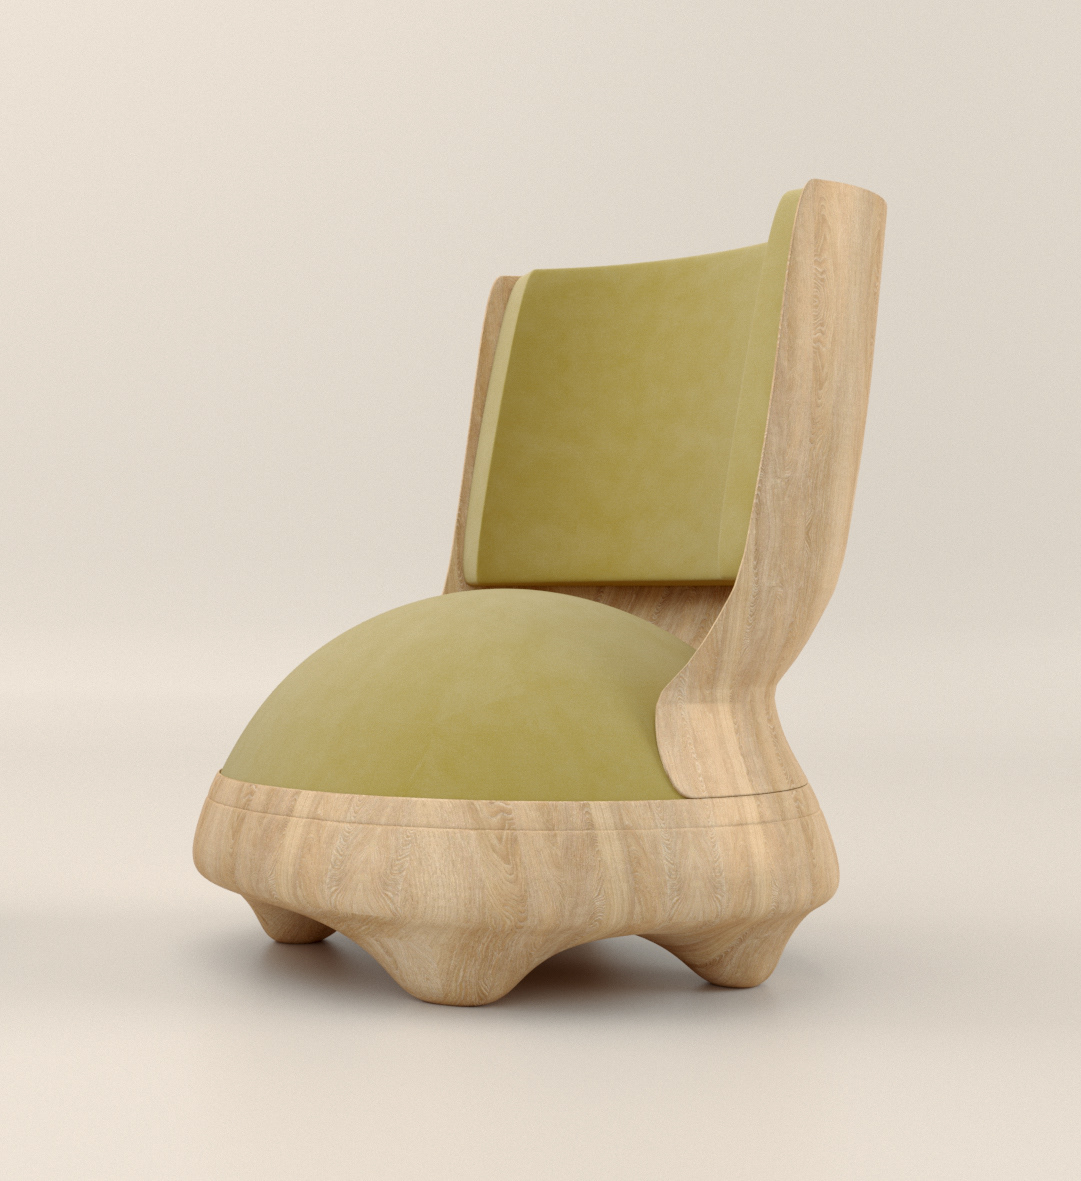 #chair #furniture #triangle #saturday #morning #weekend #happy #furnituredesign #genius #innovative #productdesign #productphotography #design #designer #designstudent #designideas #designwanted #designspiration #dizayn #designer #chairdesign